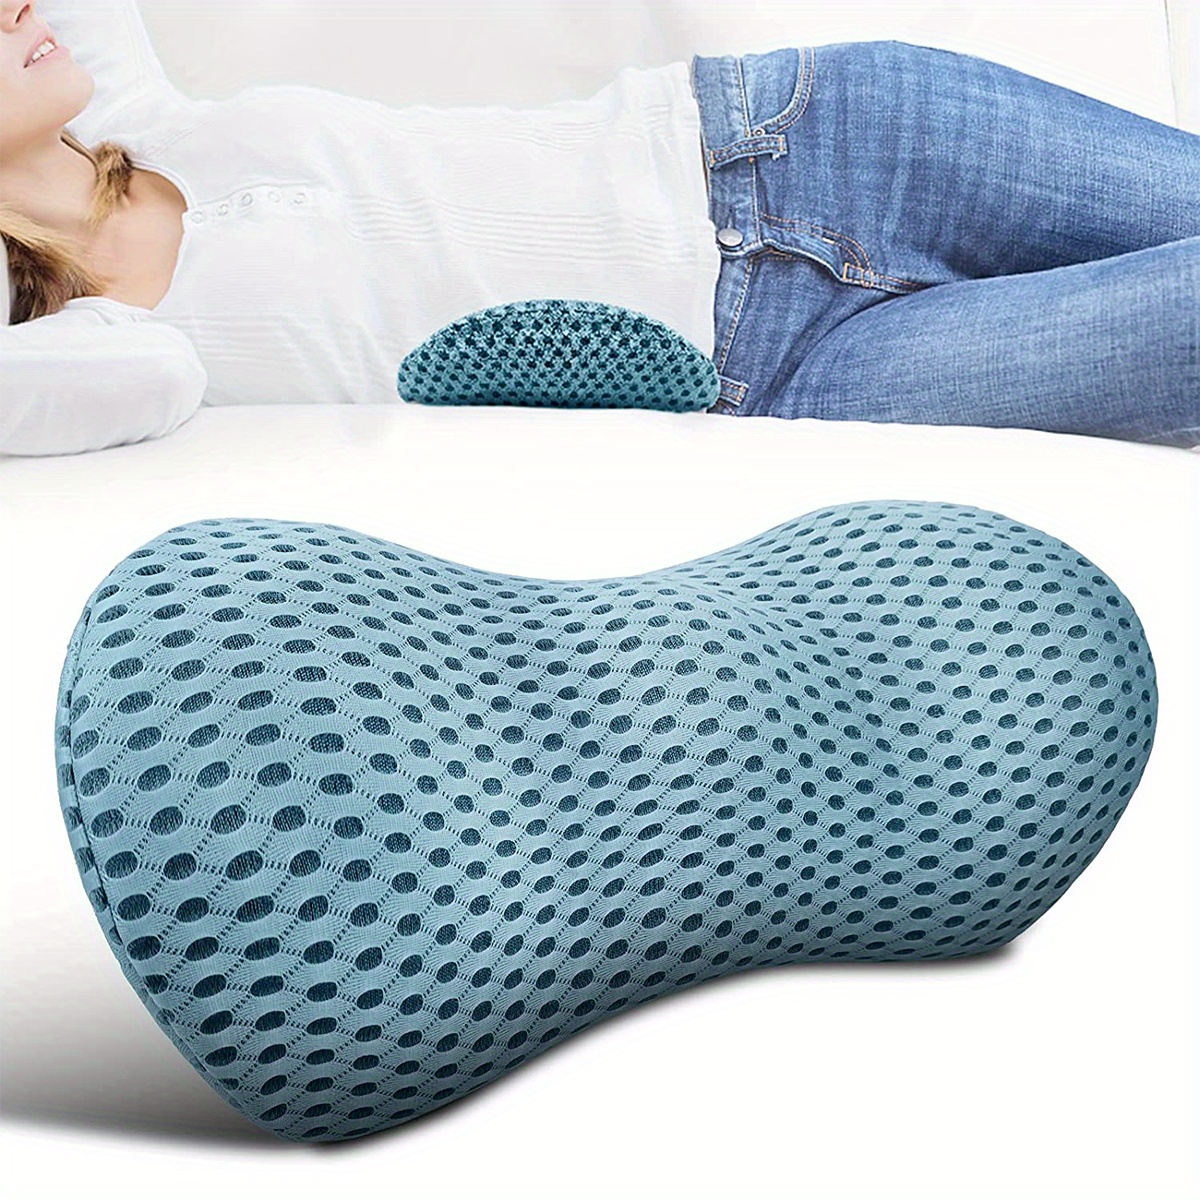 Relax Support - Memory Foam Lumbar Support Pillow Back Pillow 